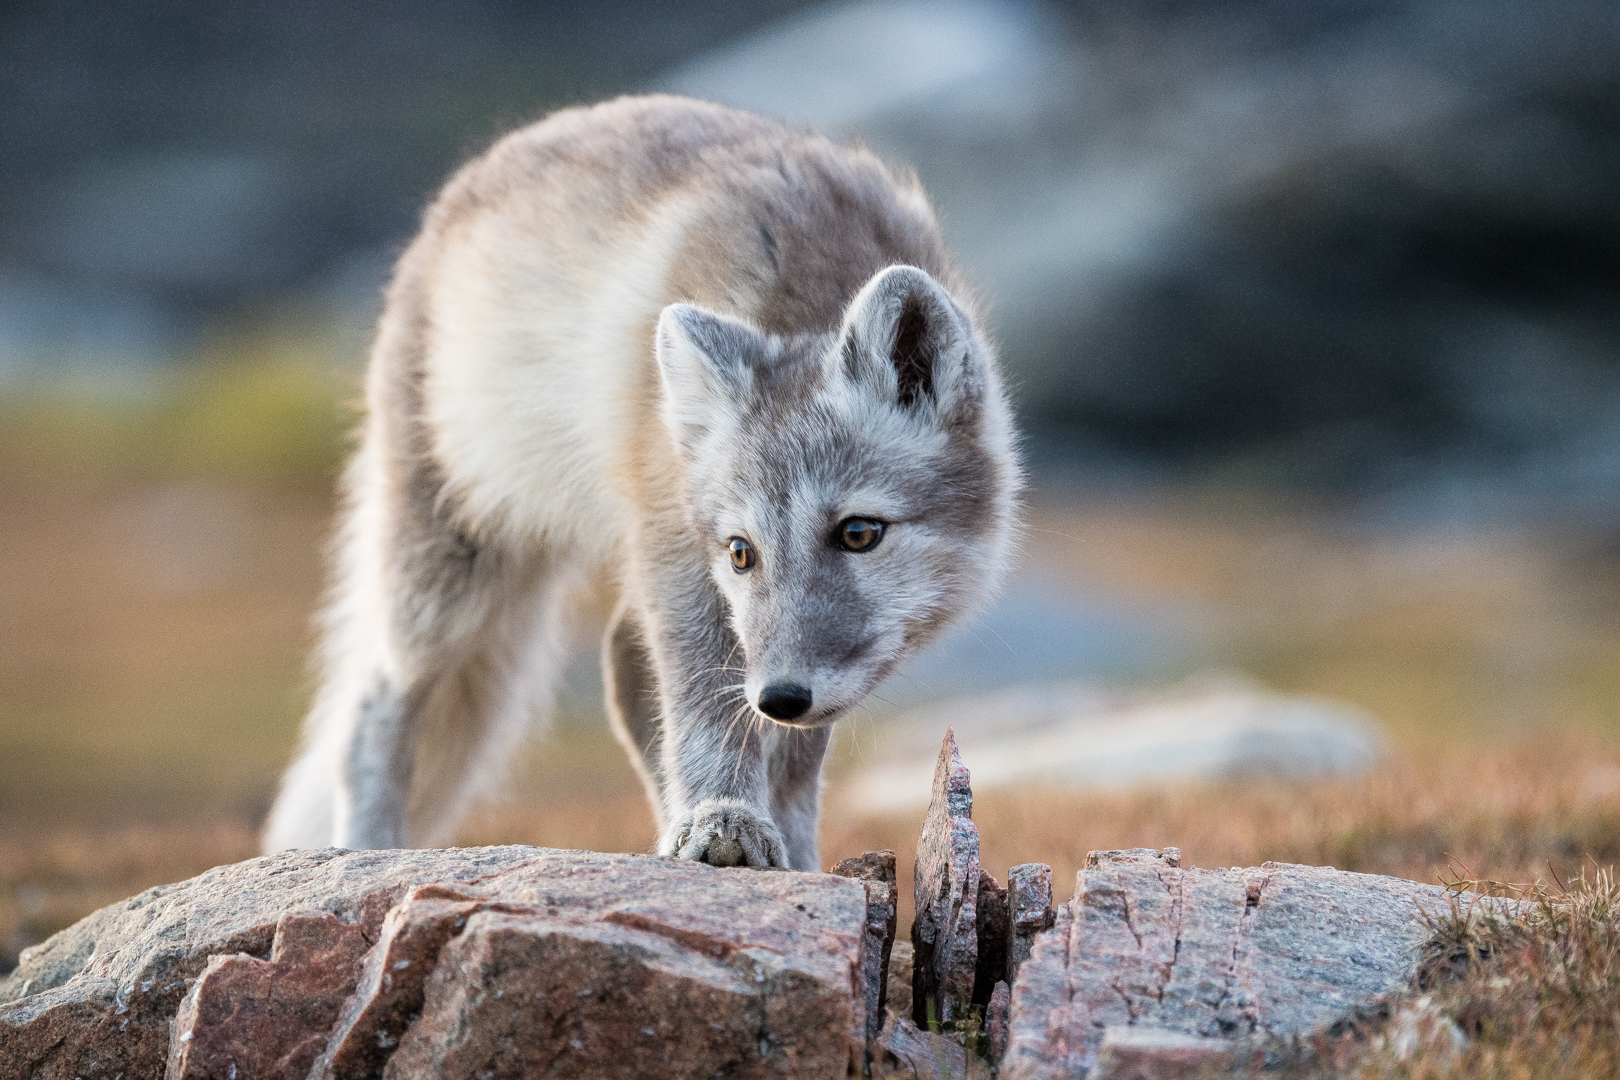 Le bébé renard polaire et sa curiosité